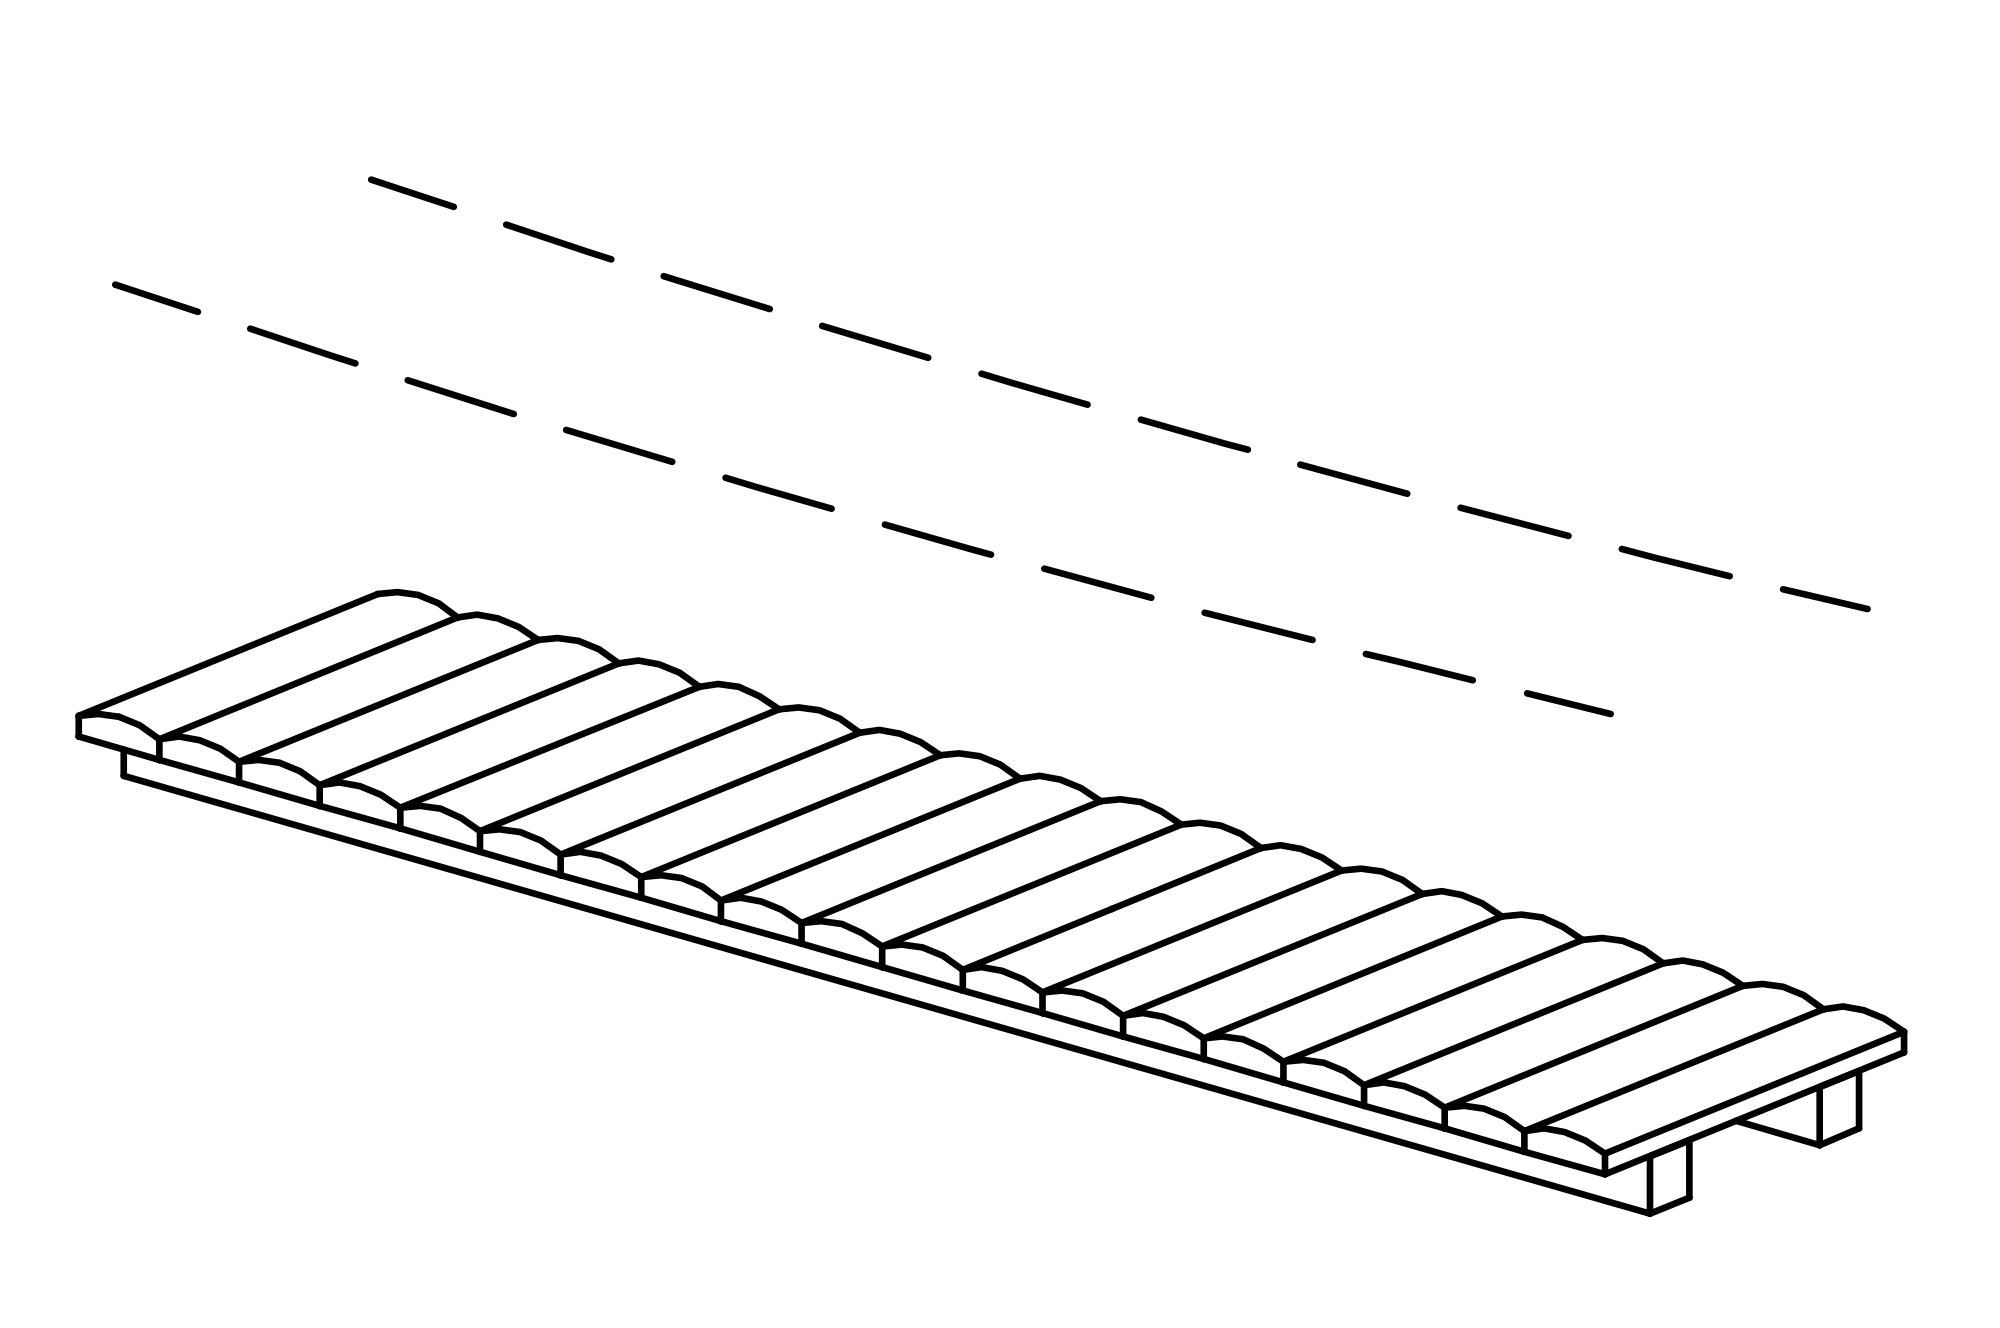 Brücke mit Kettenhandlauf, Länge = 3 m